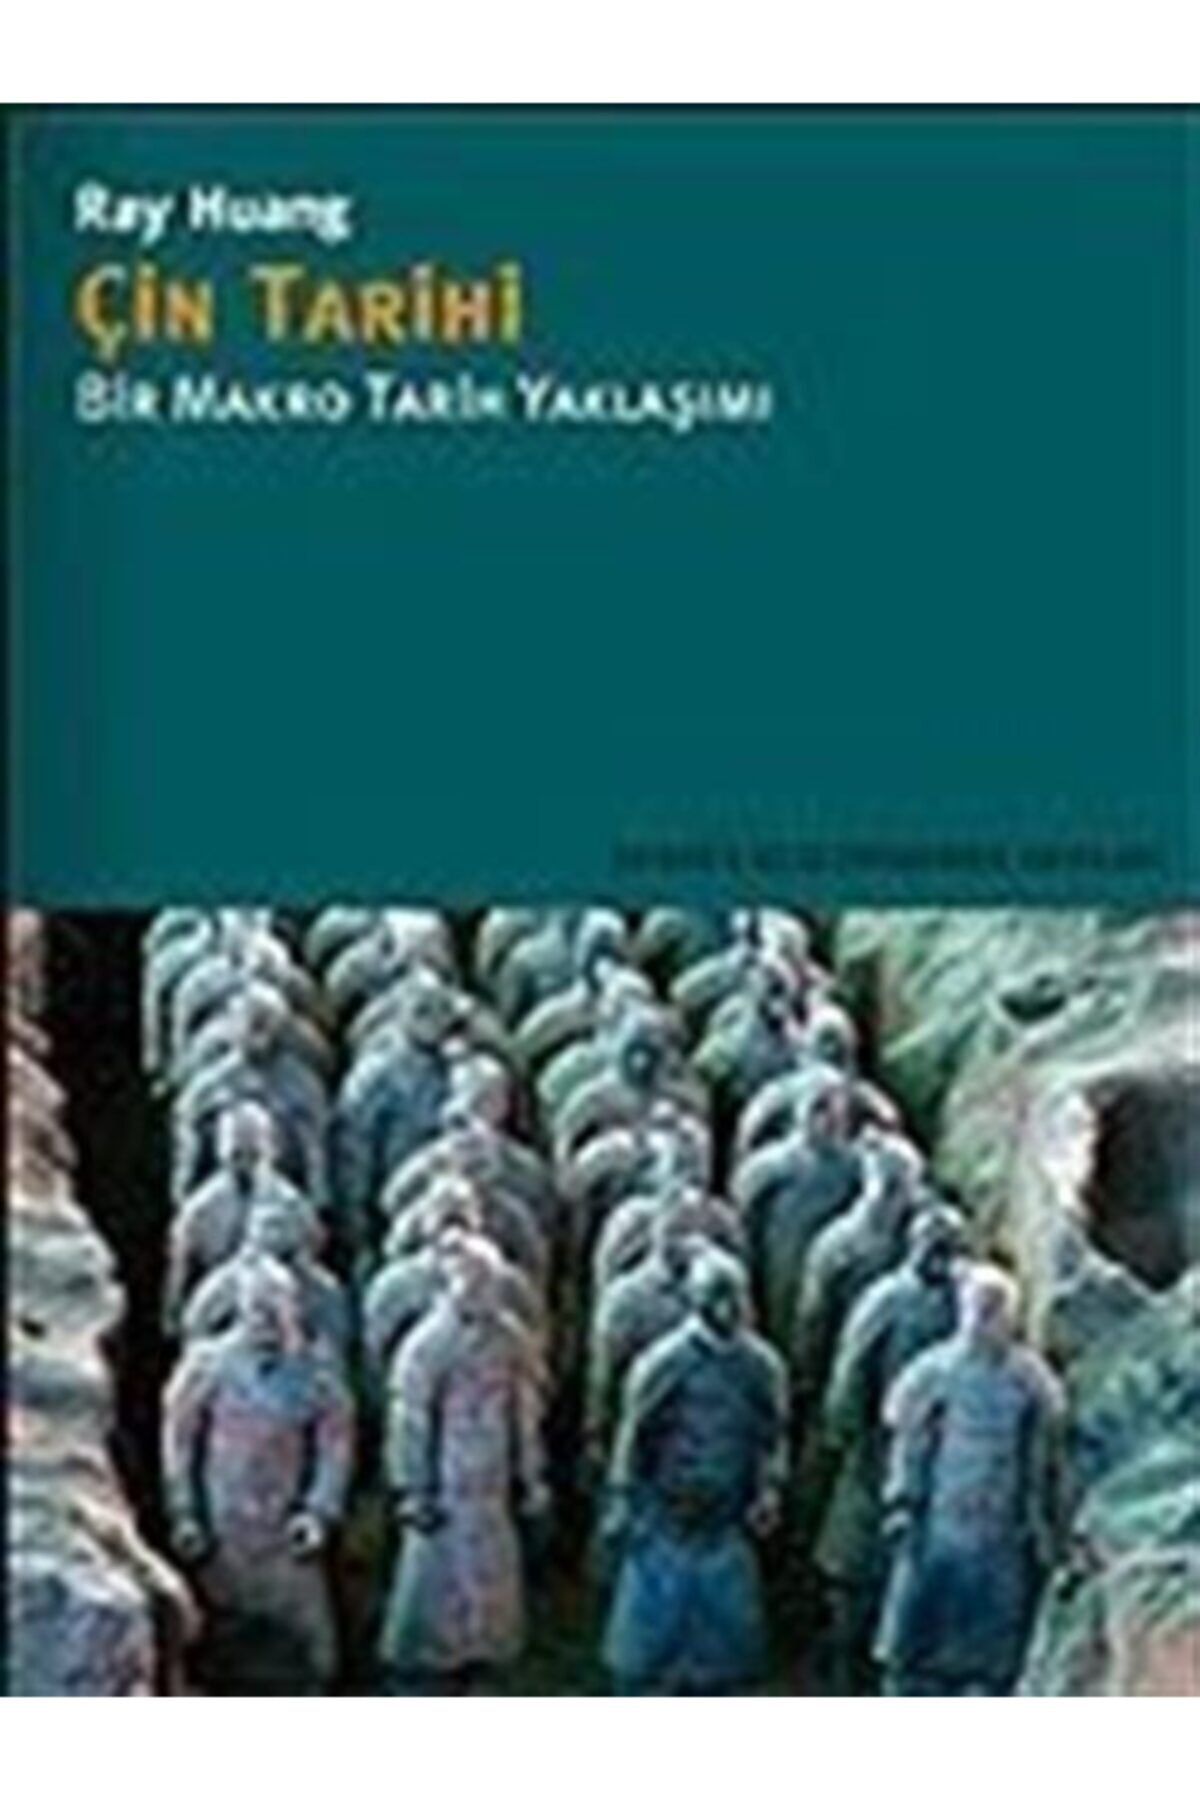 İstanbul Bilgi Üniversitesi Yayınları Çin Tarihi/bir Makro Tarih Yaklaşımı